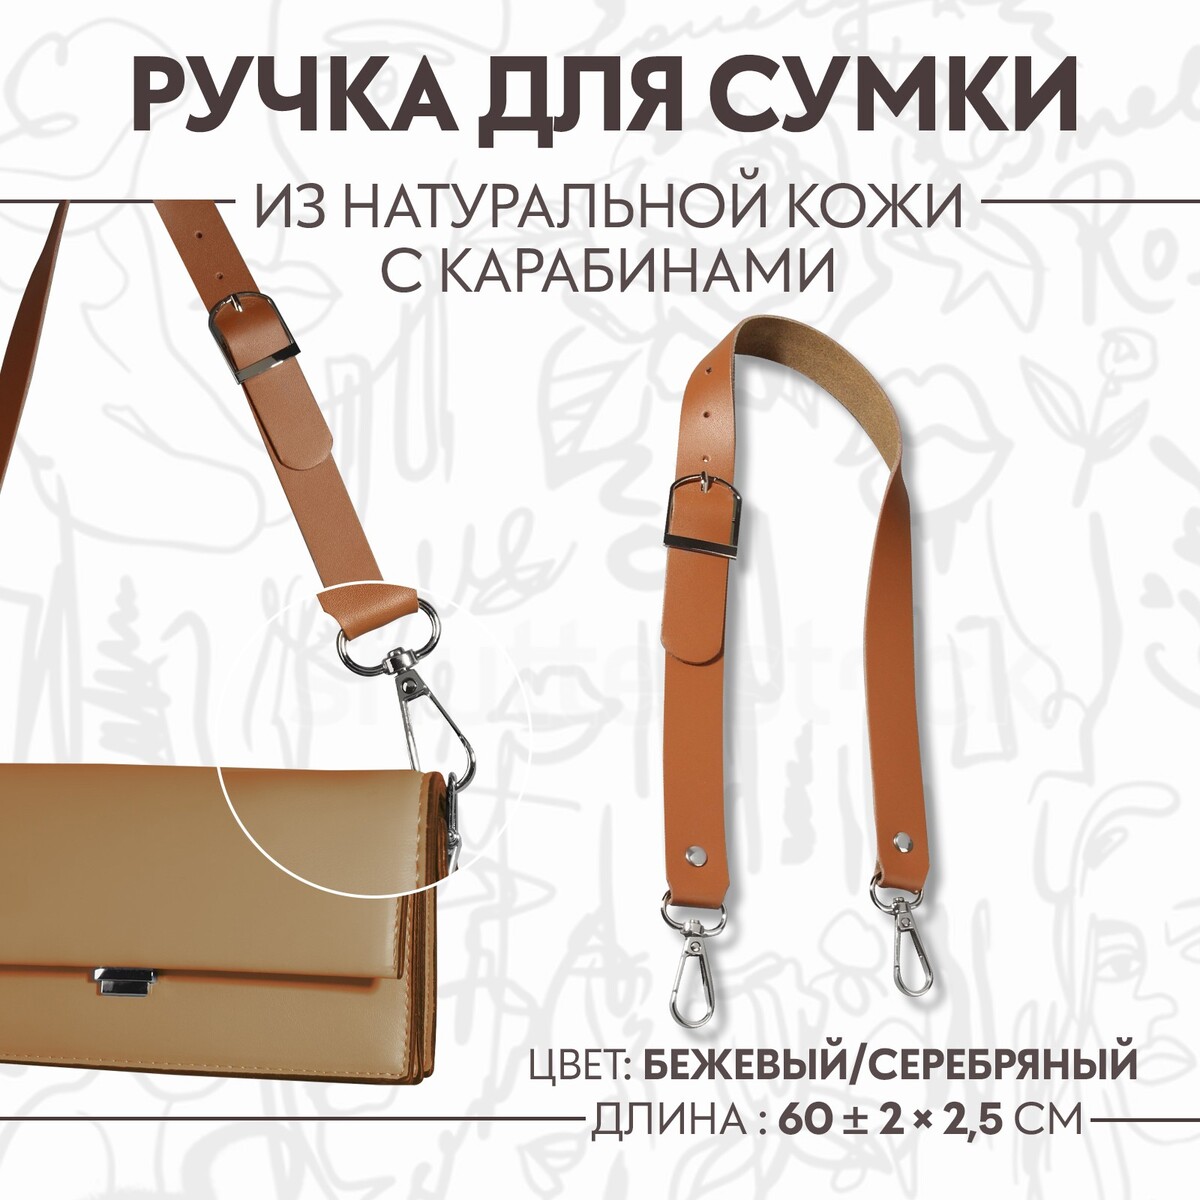 Ручка для сумки из натуральной кожи, регулируемая, с карабинами, 60 ± 2 см × 2,5 см, цвет бежевый/серебряный ручка шнурок для сумки с карабинами 120 × 0 6 см